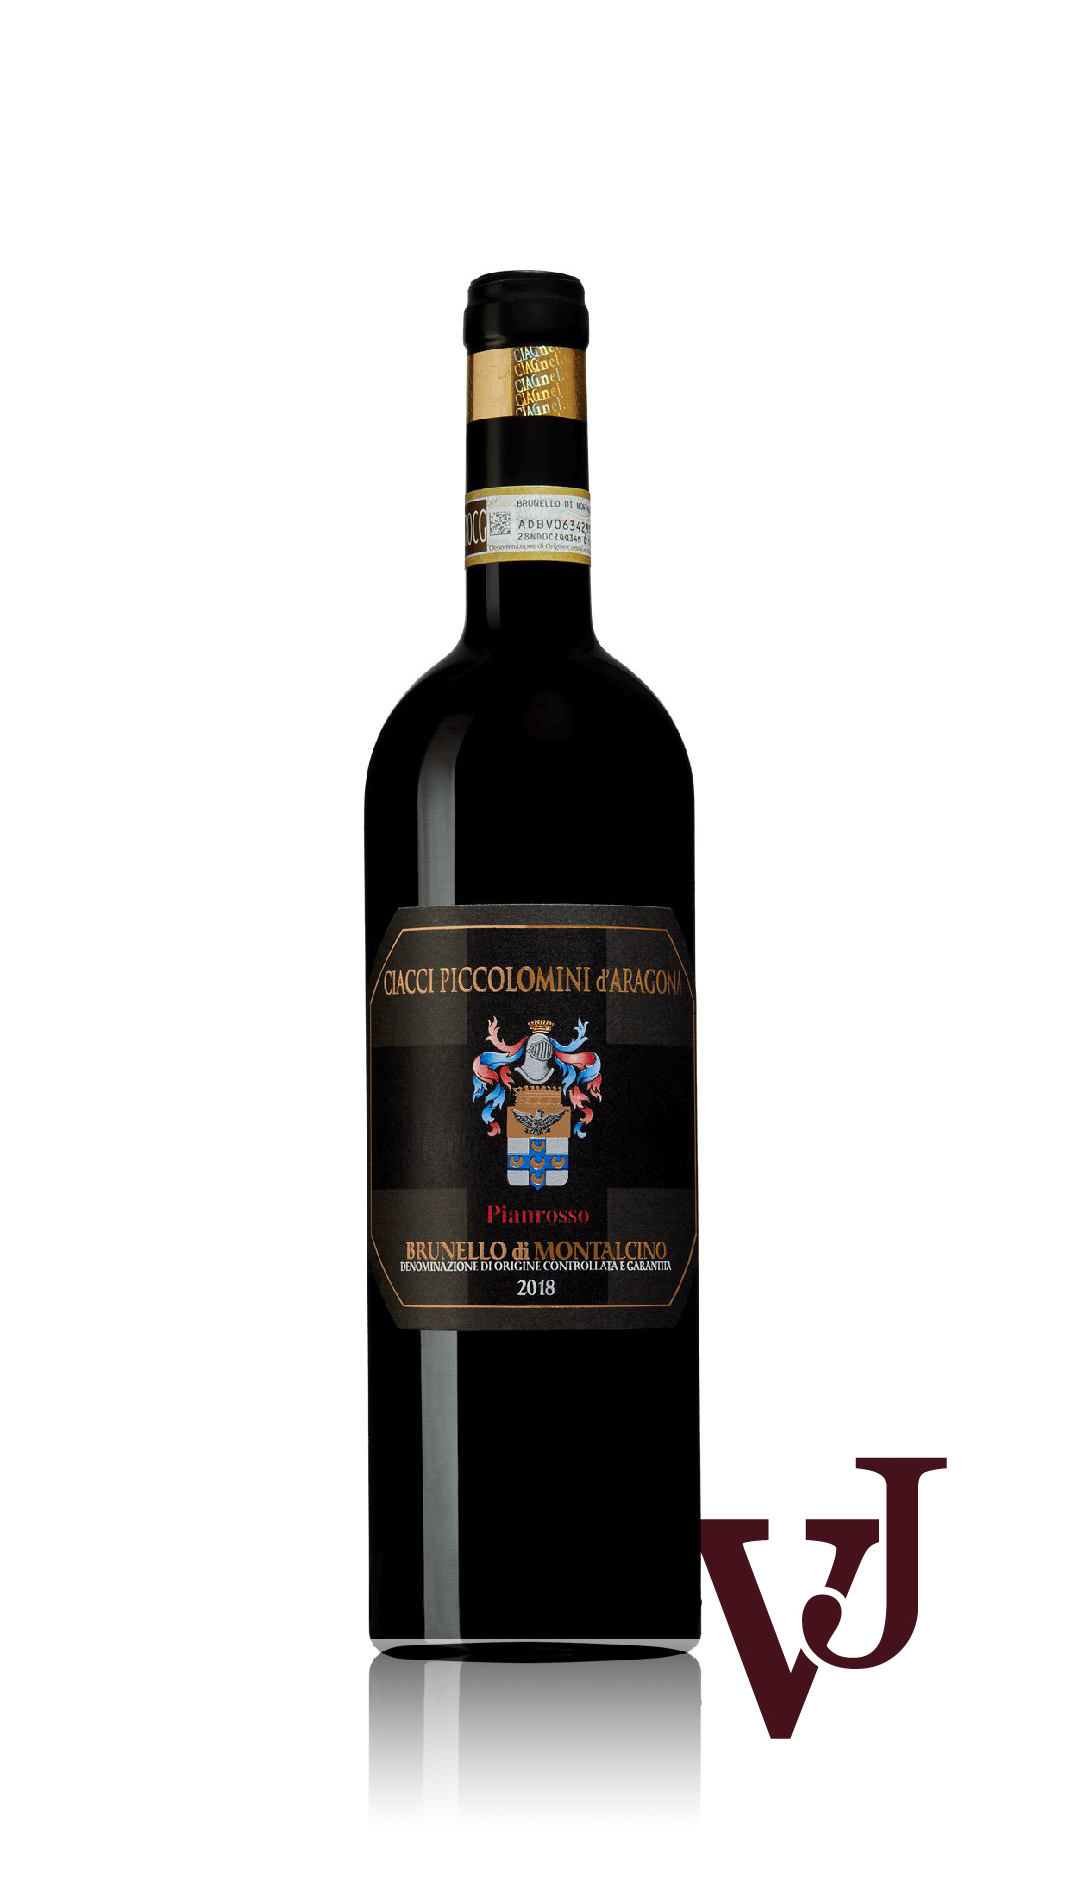 Rött Vin - Brunello di Montalcino Pianrosso Ciacci Piccolomini 2018 artikel nummer 9206401 från producenten Ciacci Piccolomini från Italien